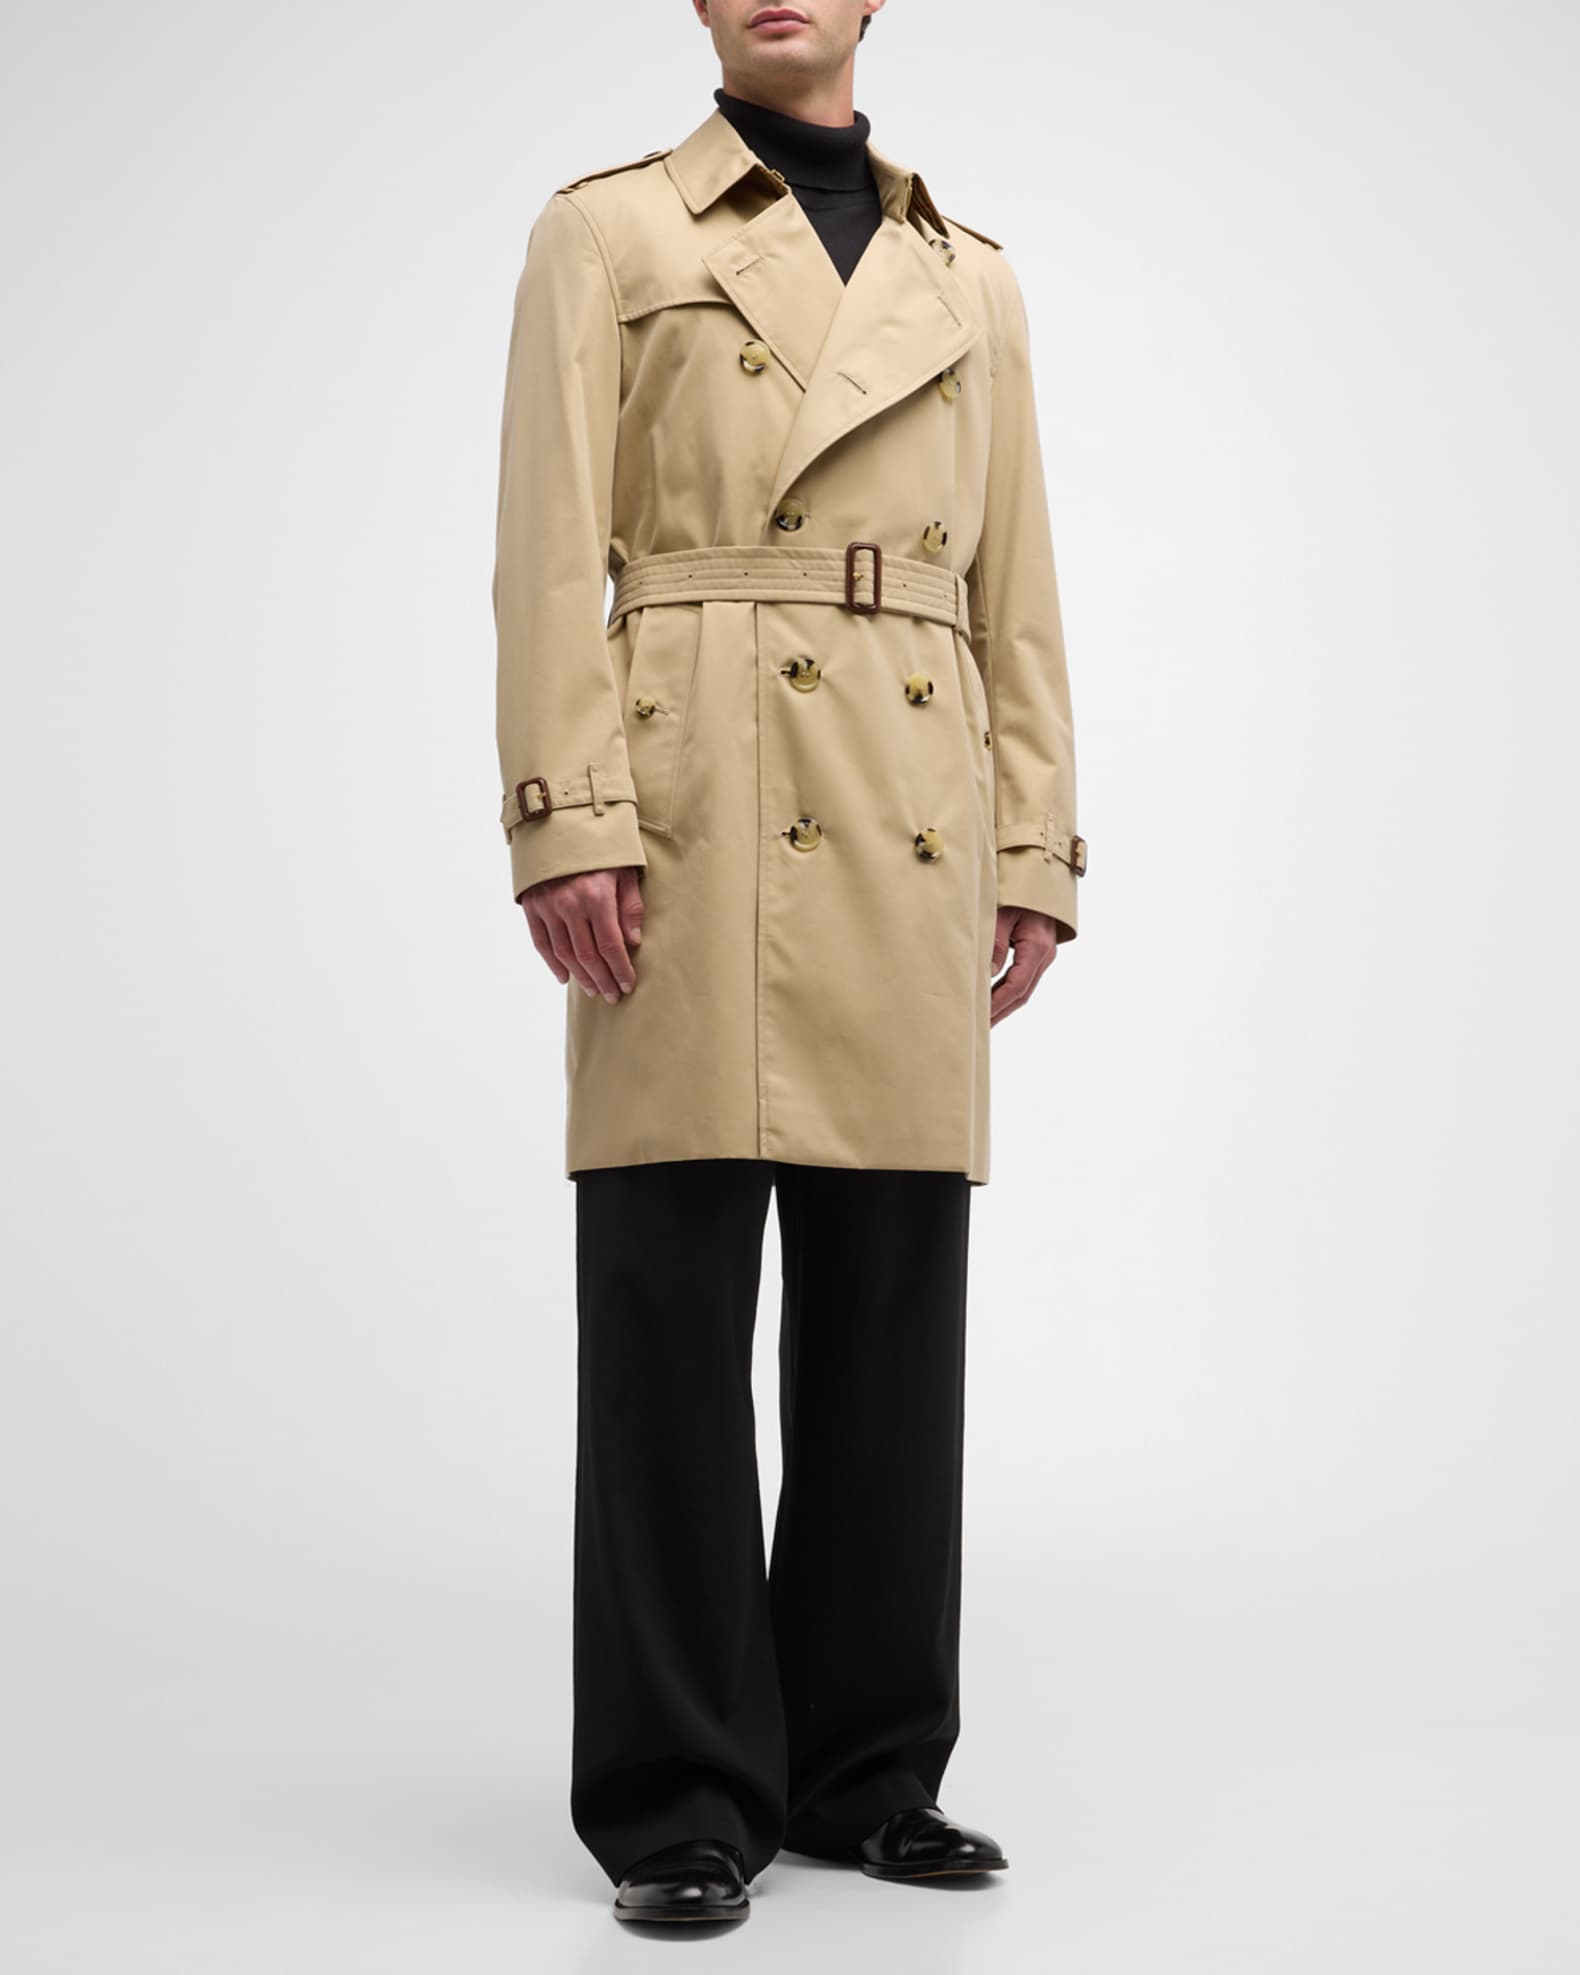 Burberry Men's Kensington Trench Coat | Neiman Marcus